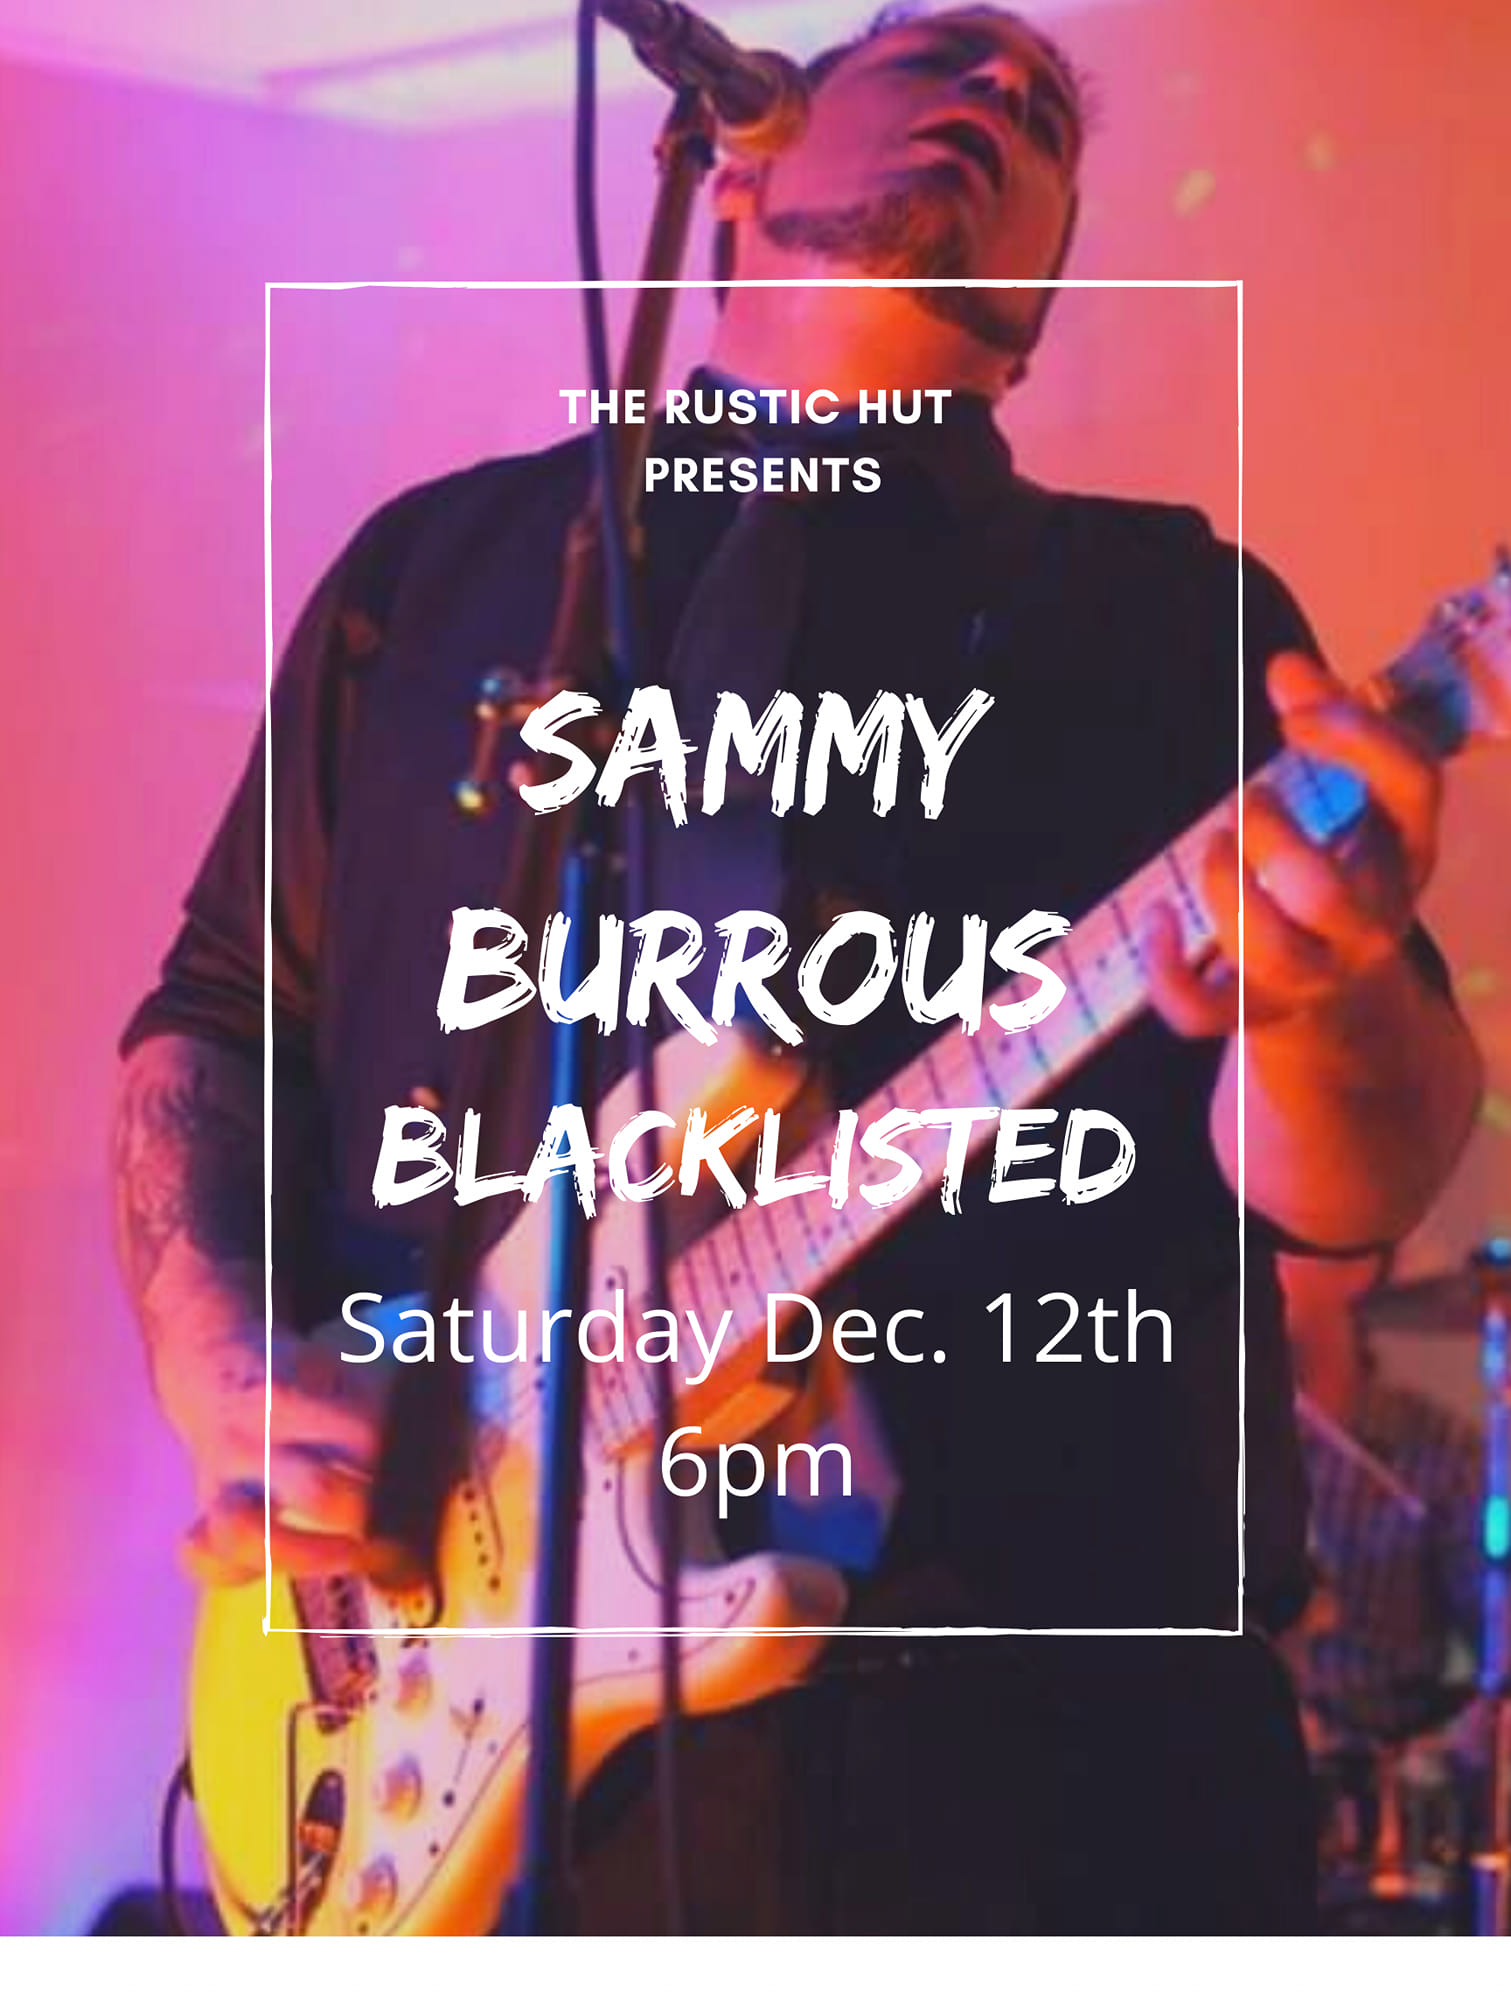 Sammy Burrous Blacklisted